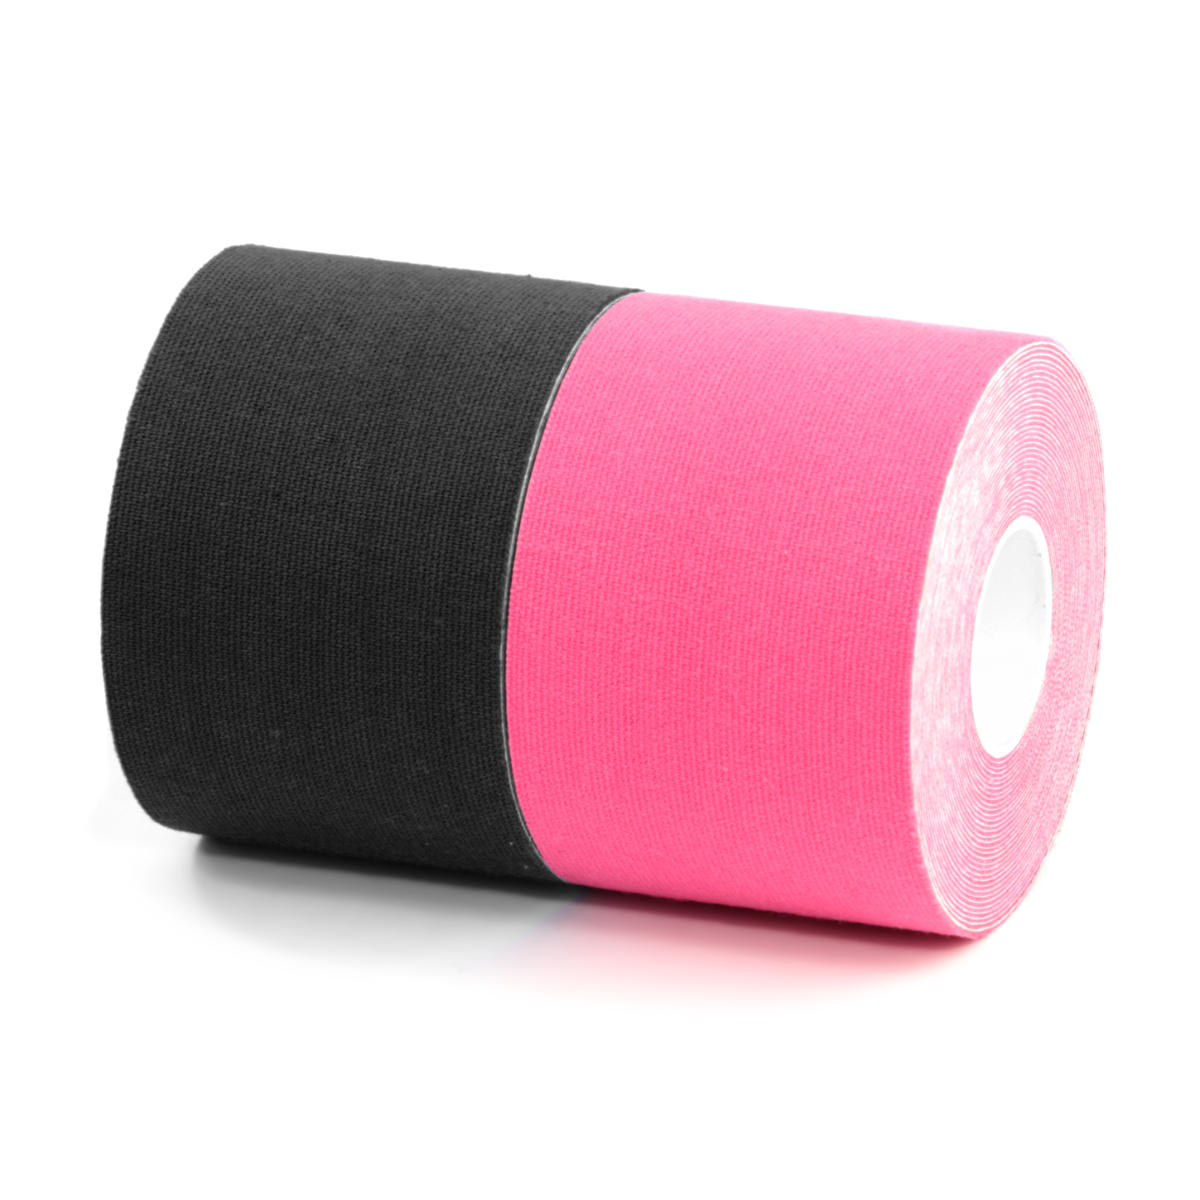 BRONVIT Sport Kinesio Tape set 2 x 5cm x 6m černá + růžová